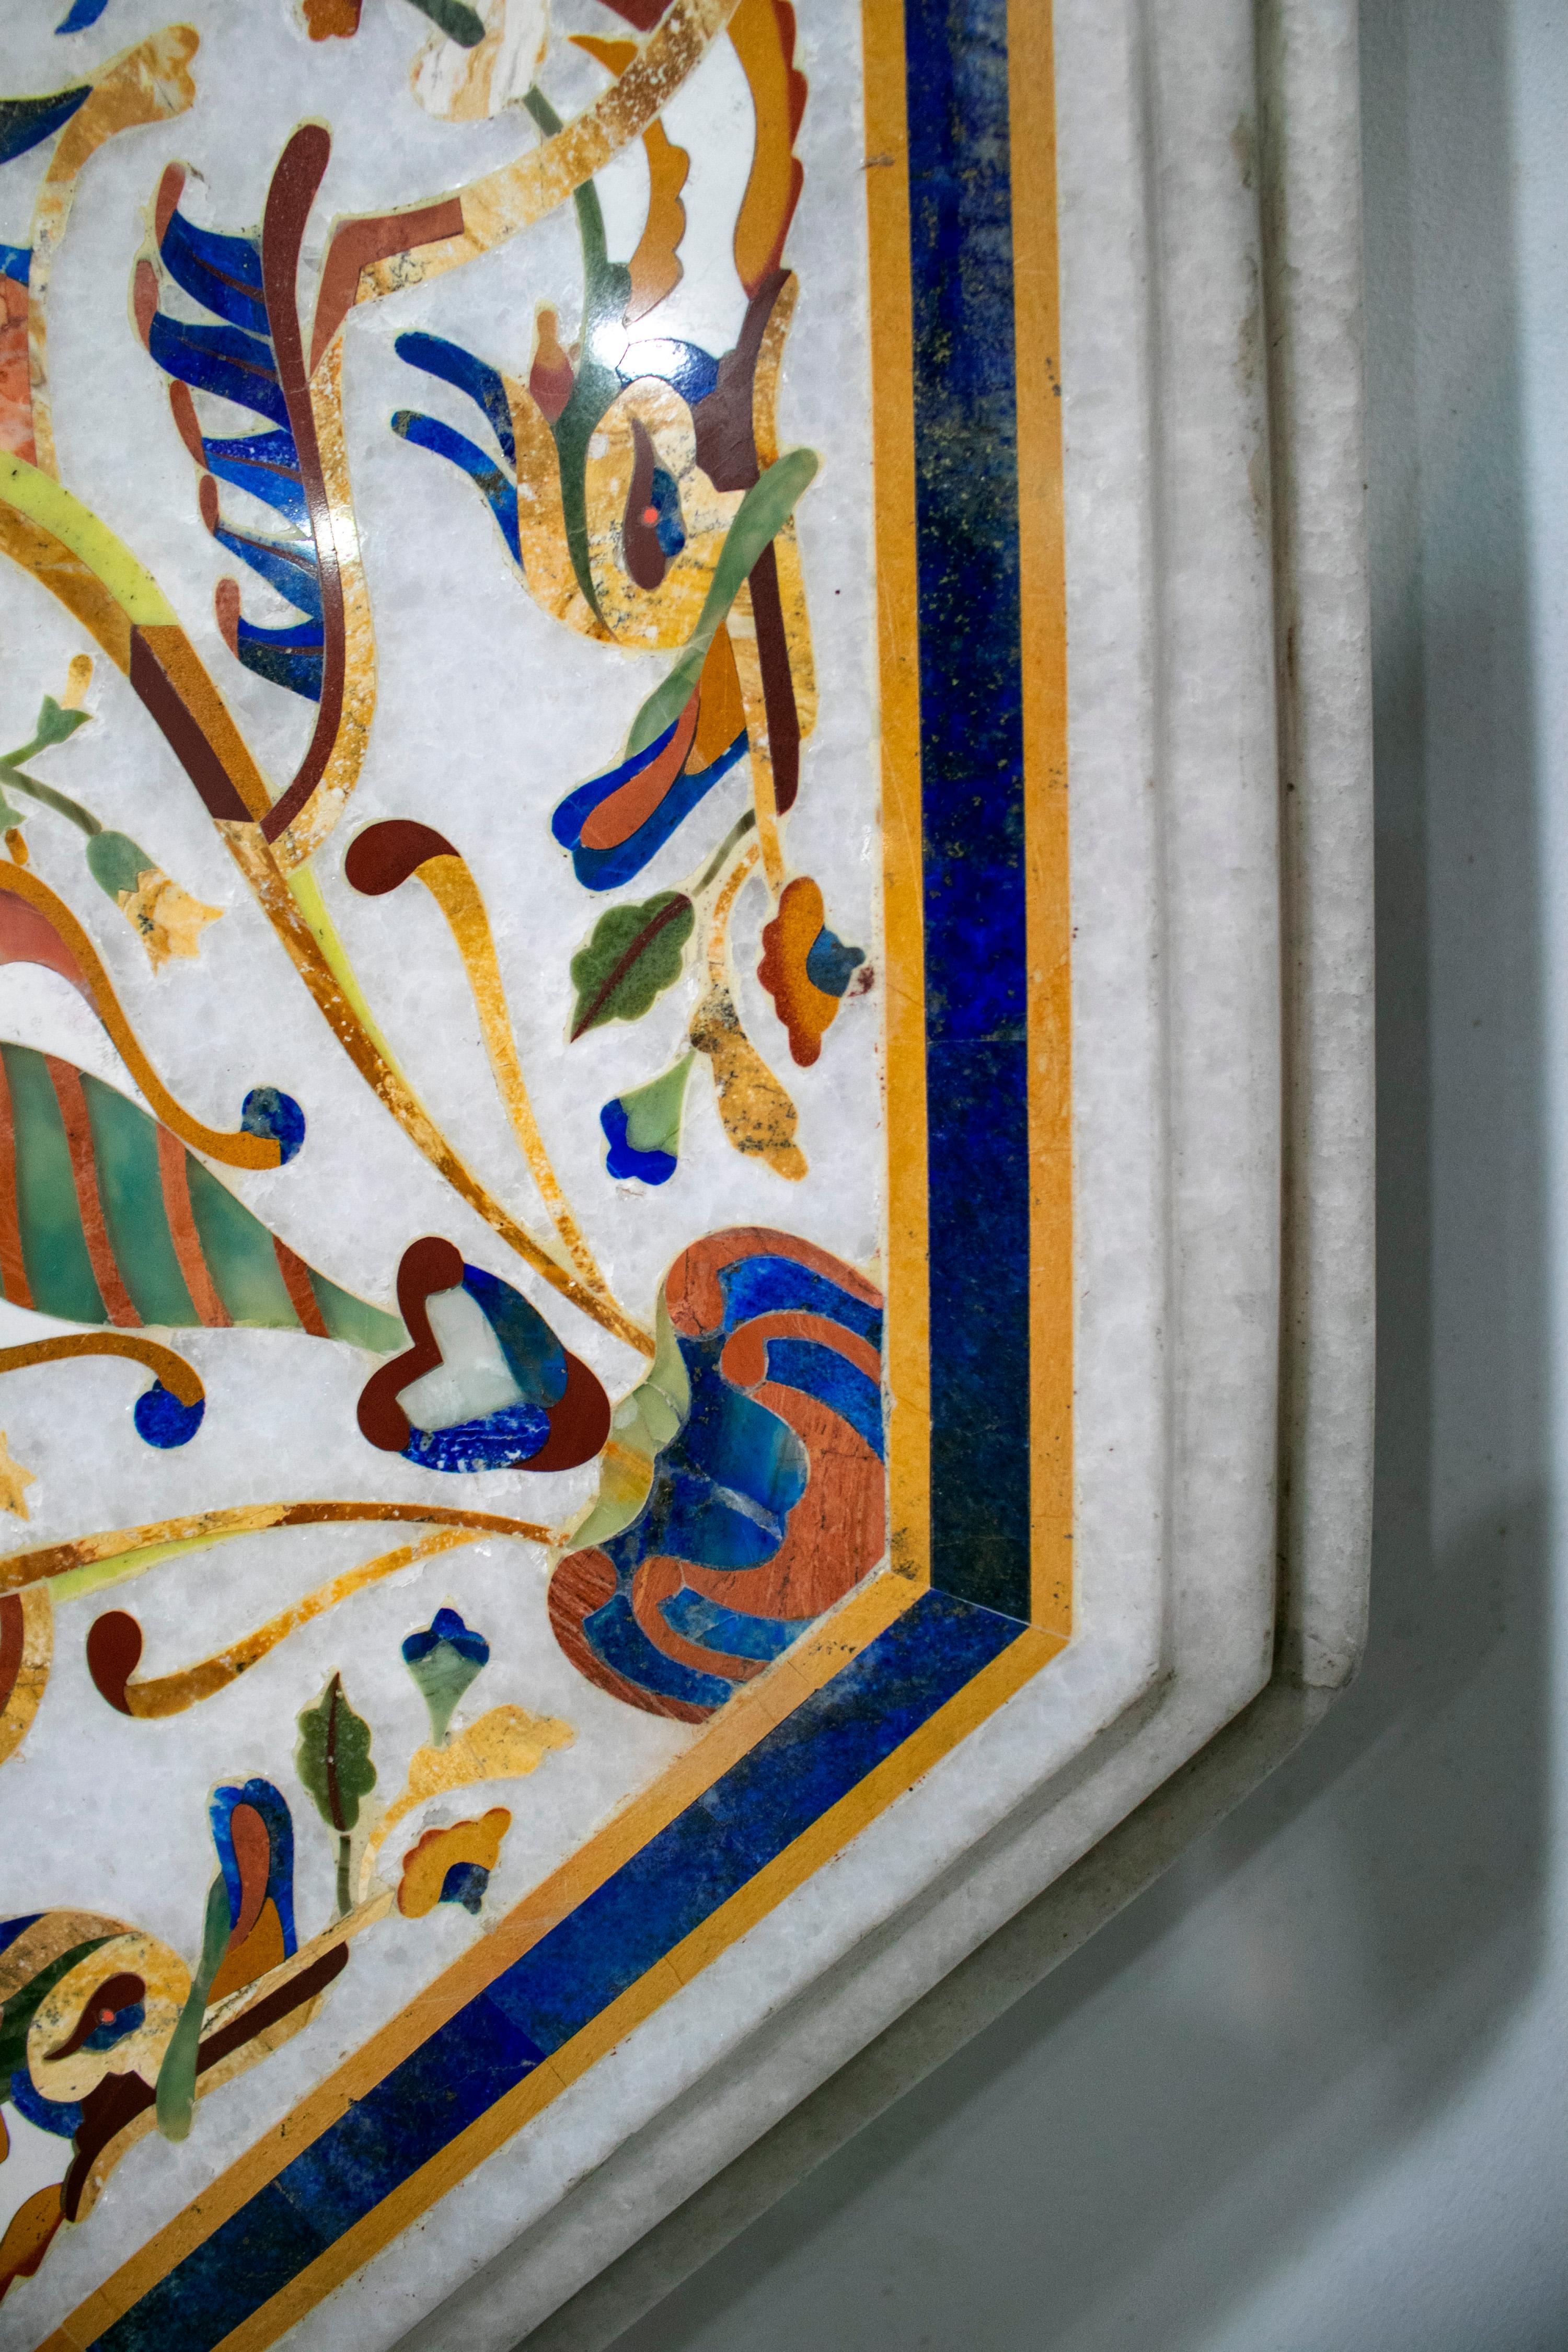 Plateau octogonal en marbre blanc de Carrare abondamment décoré d'incrustations de mosaïque de Pietre Dure italienne utilisant de la malachite verte, du lapis bleu foncé, de la turquoise bleu clair, du jade vert clair, de la nacre et d'autres